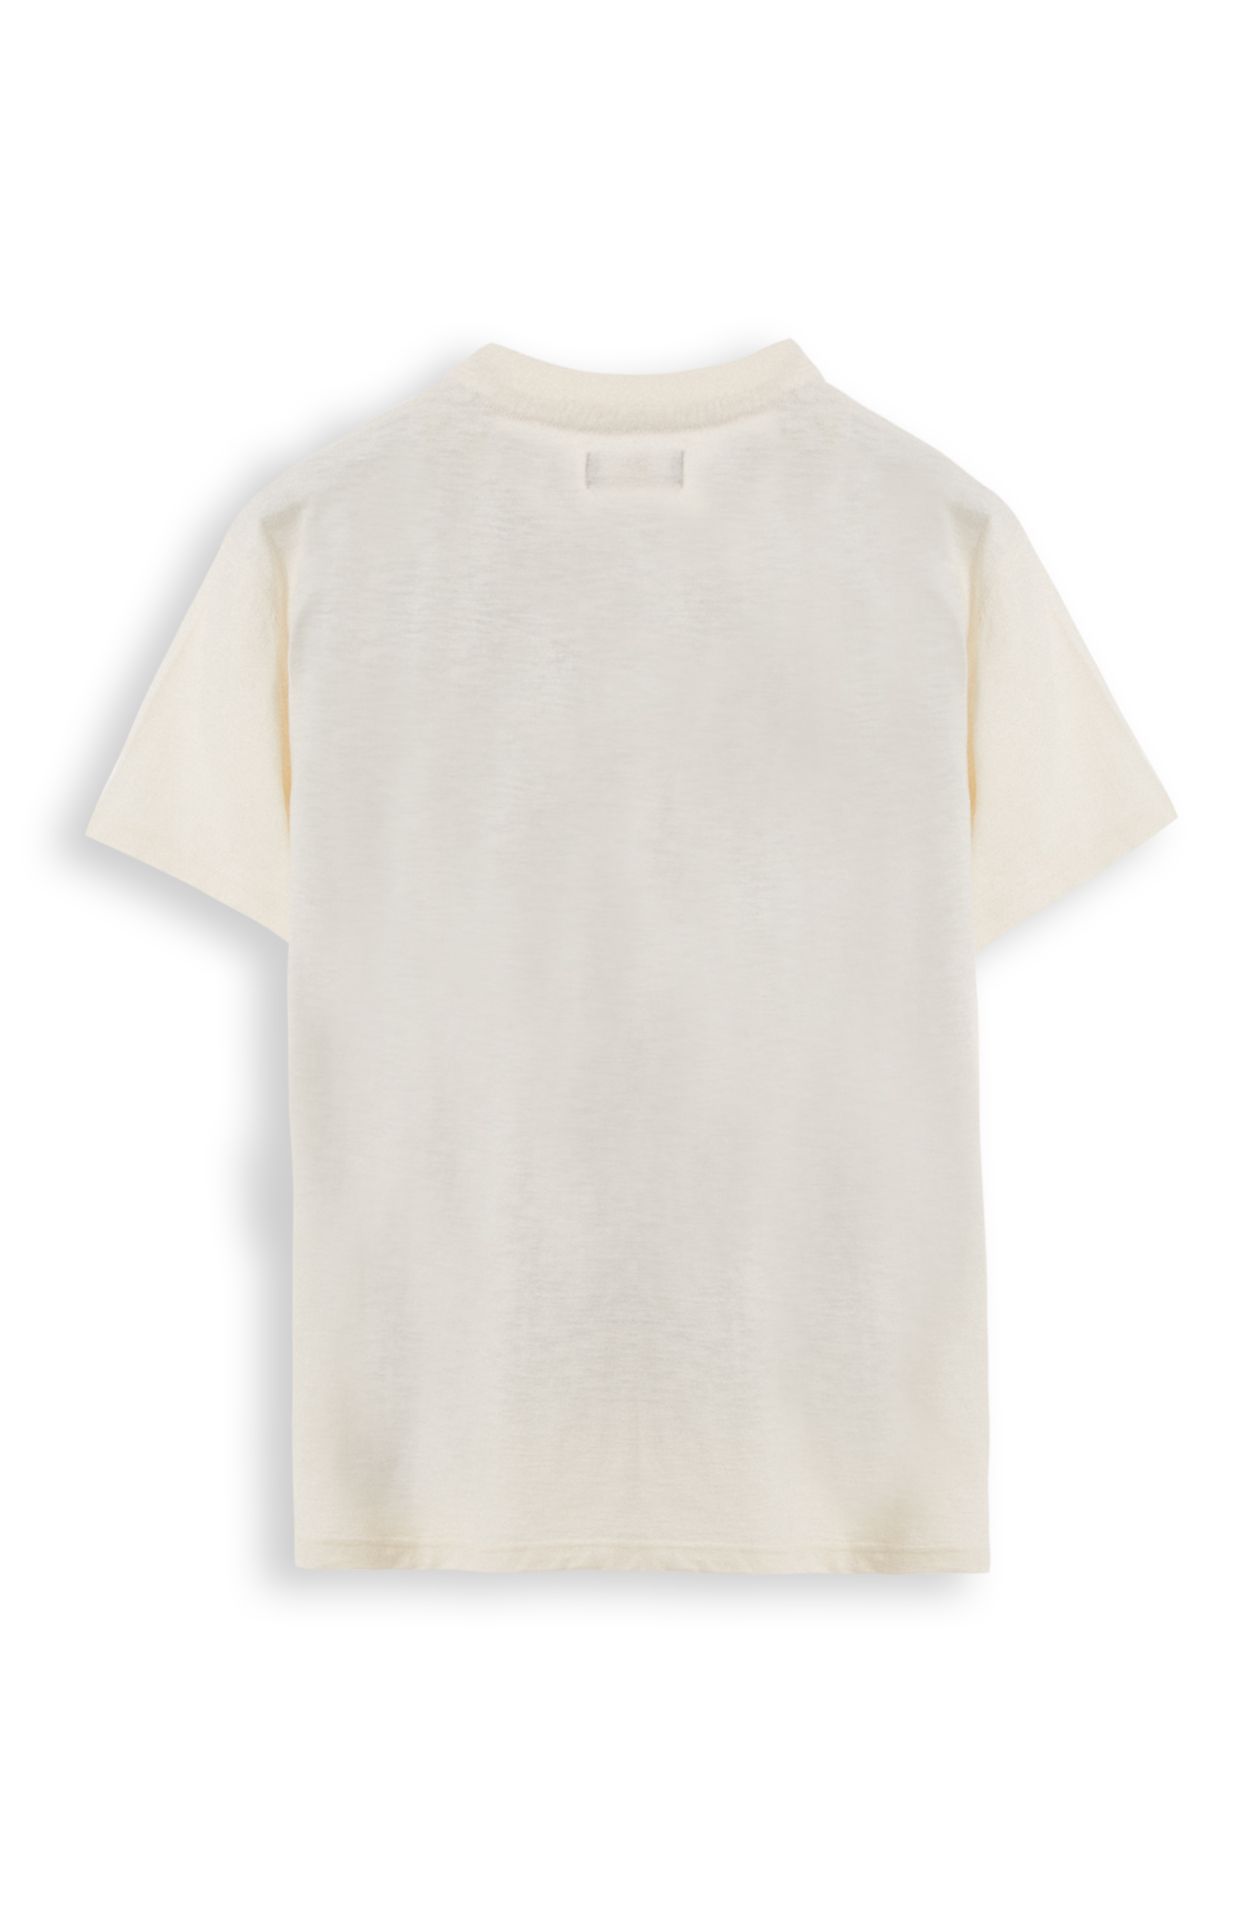 Baumwoll-T-Shirt mit halben Ärmeln